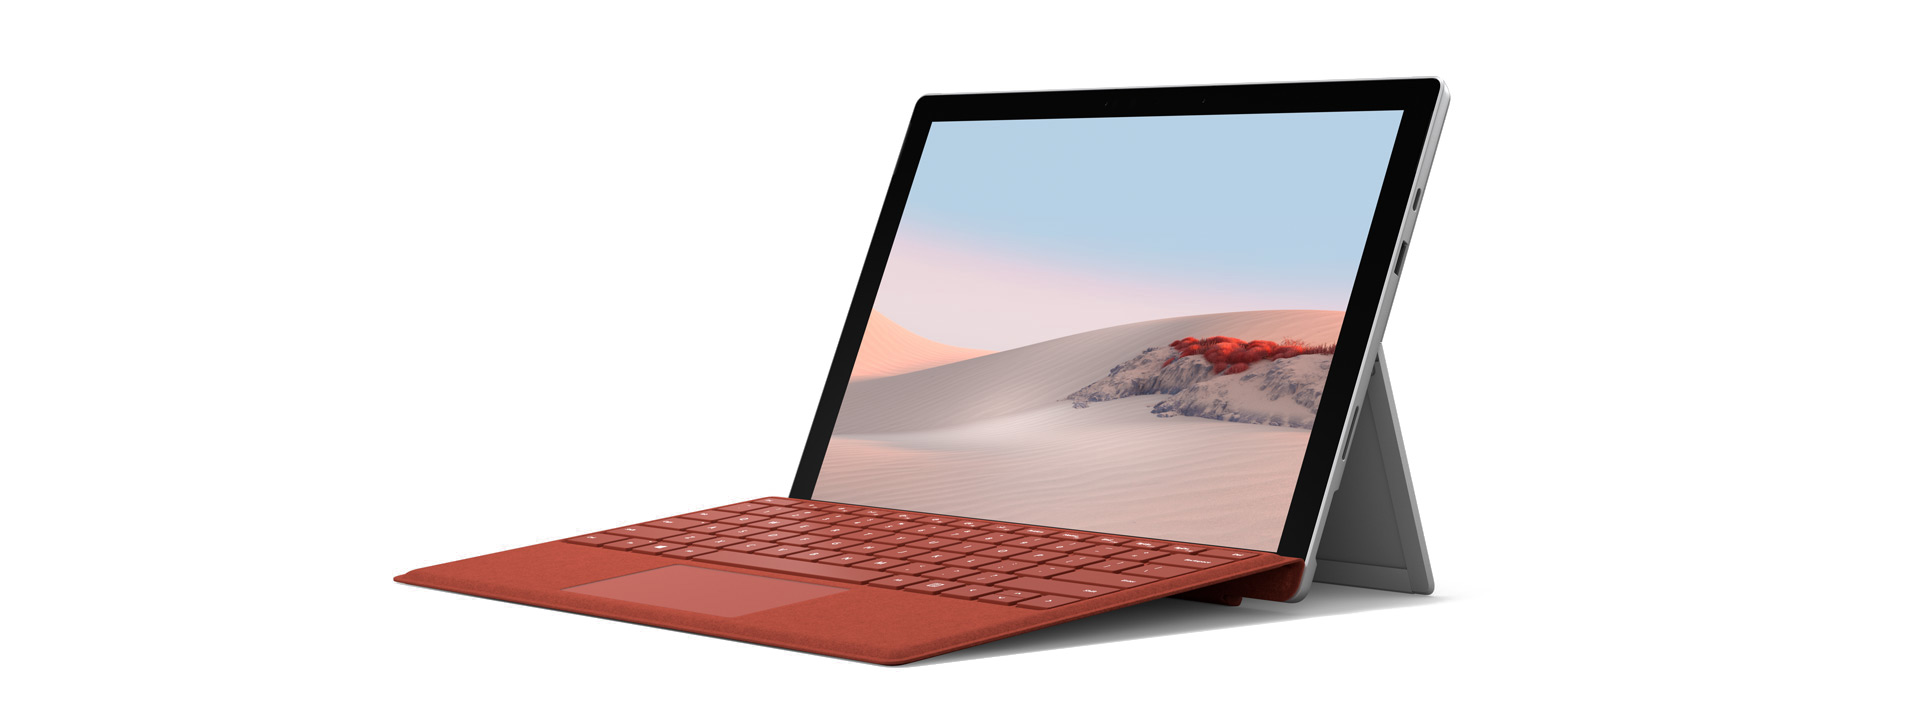 Surface Pro 7 avec clavier Type Cover pour Surface en vue inclinée